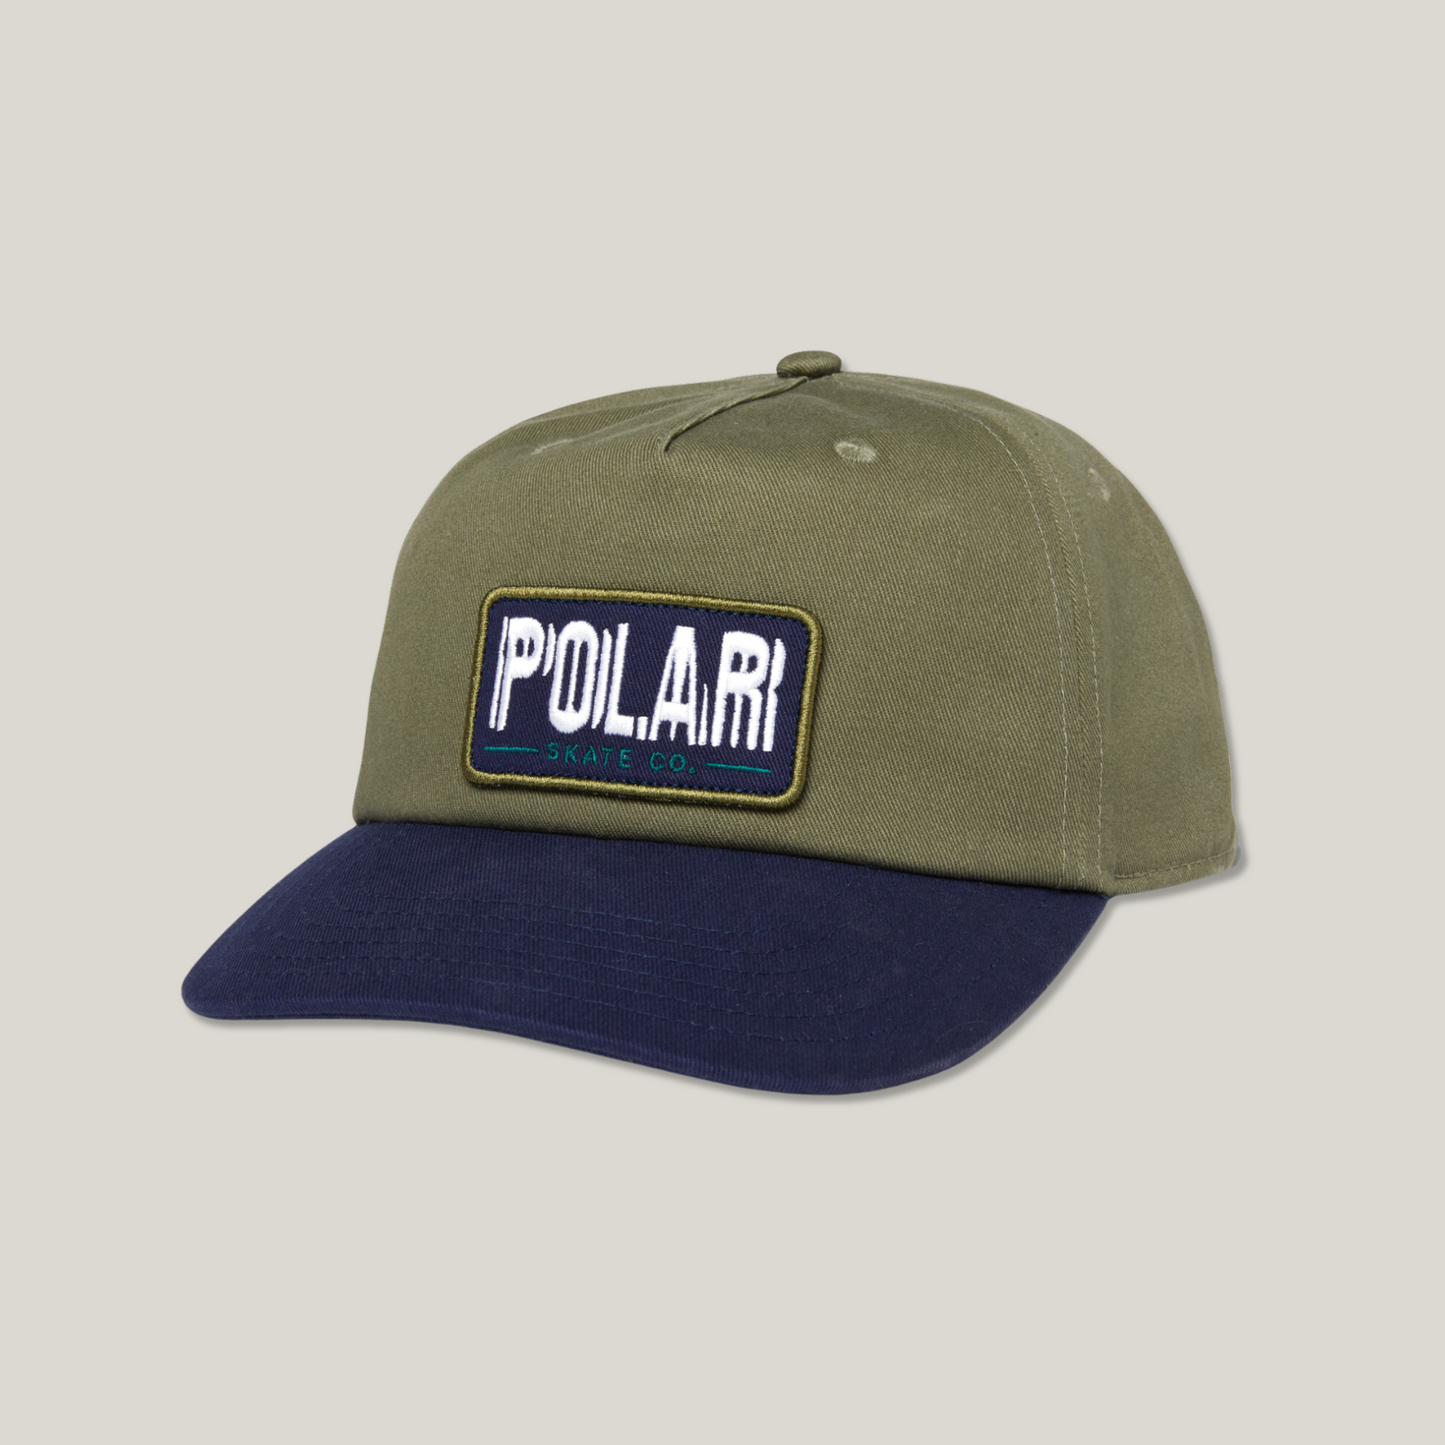 Polar - Earthquake patch cap - Green